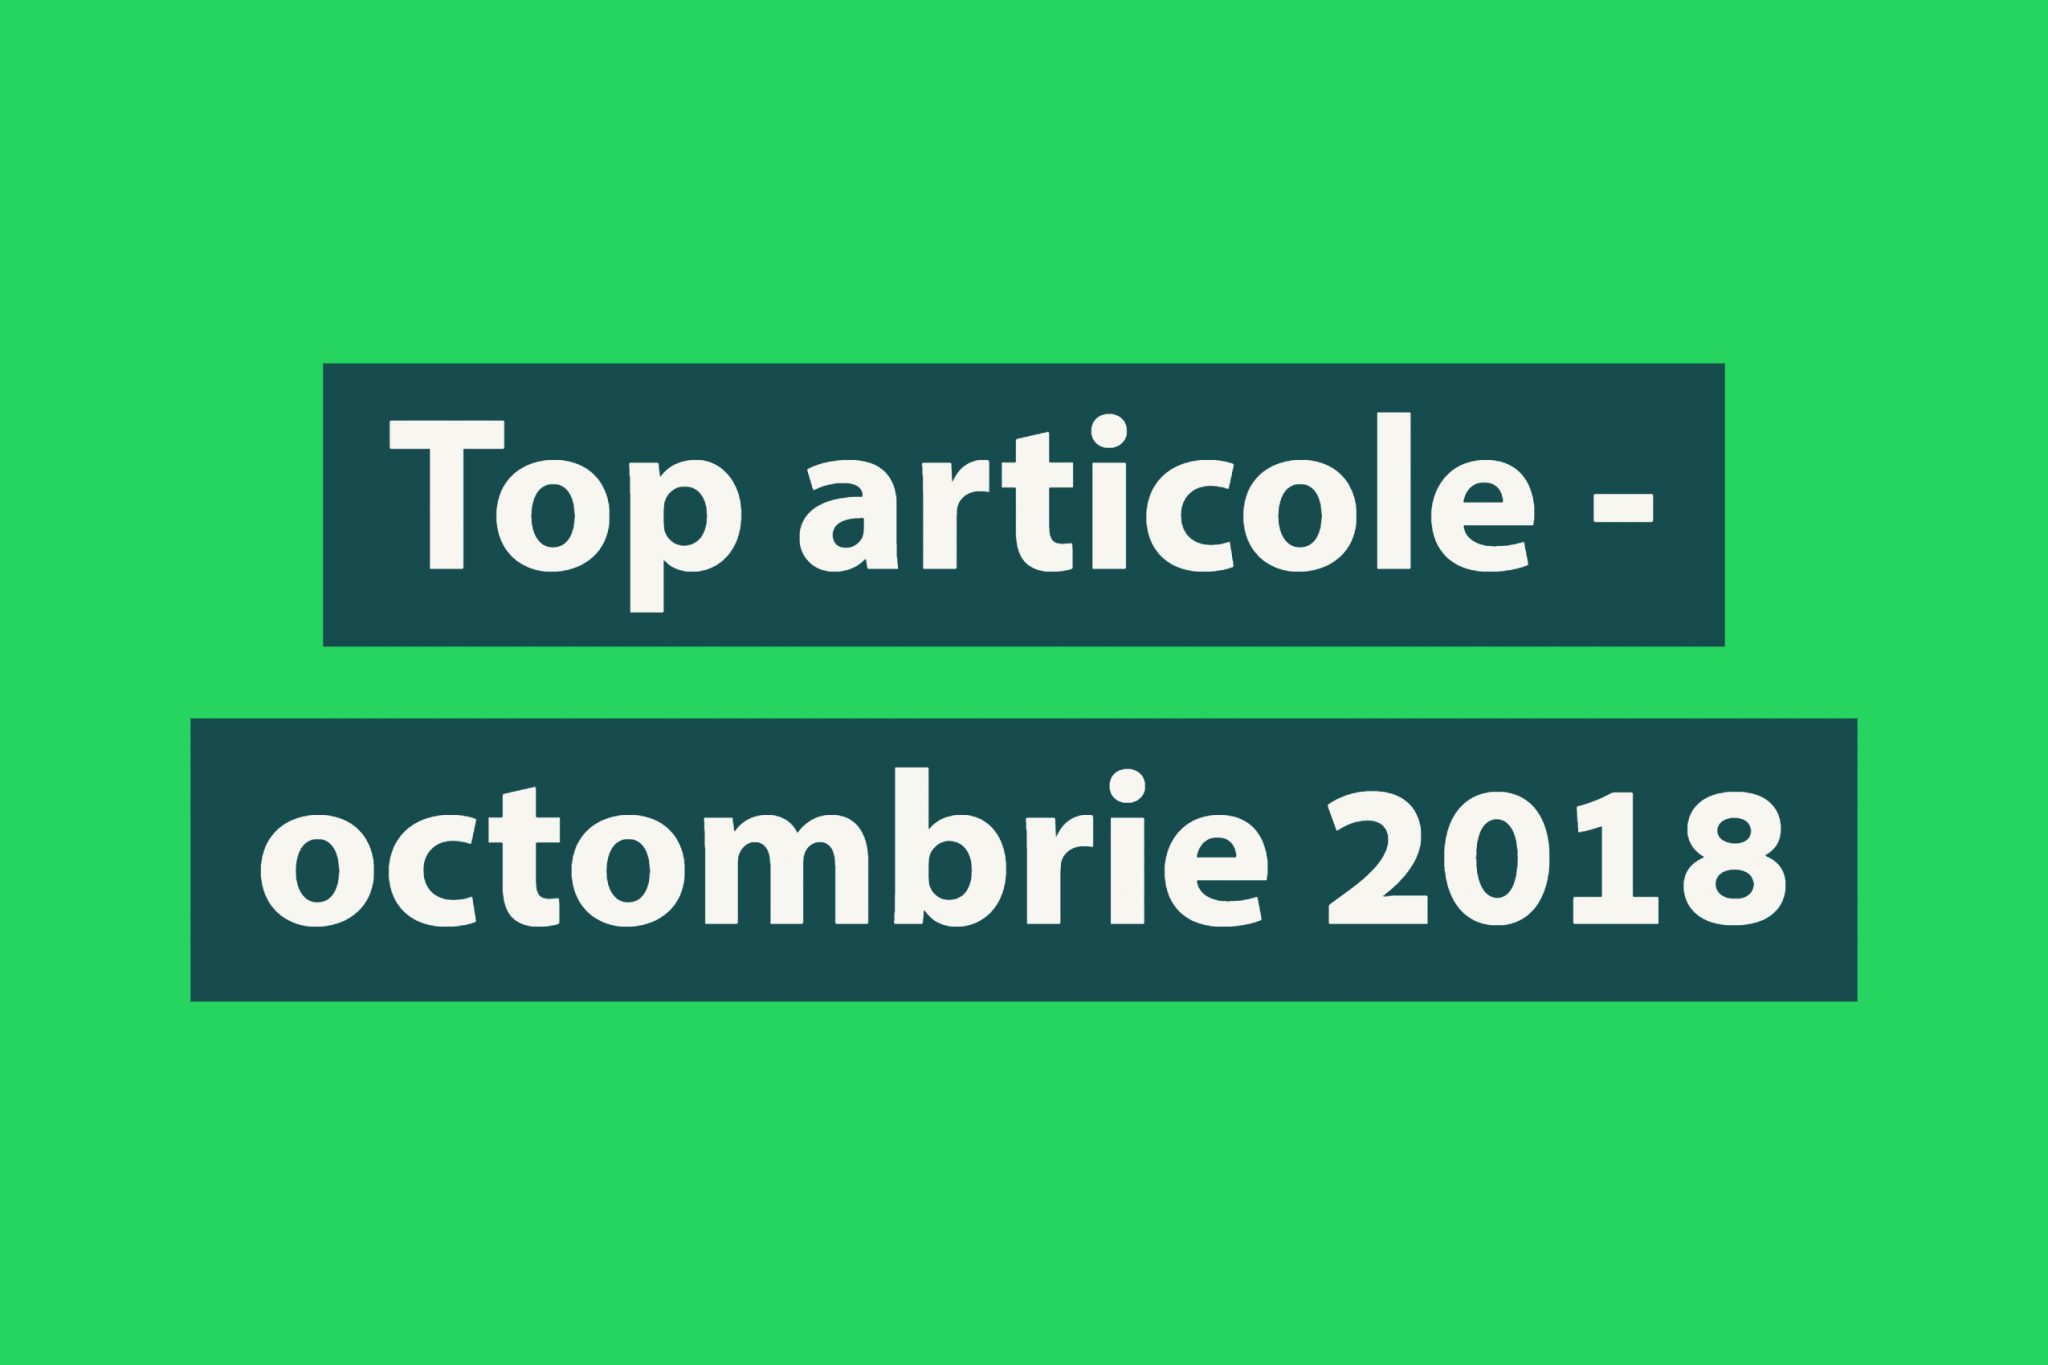 Top articole luna octombrie Biciclistul.ro